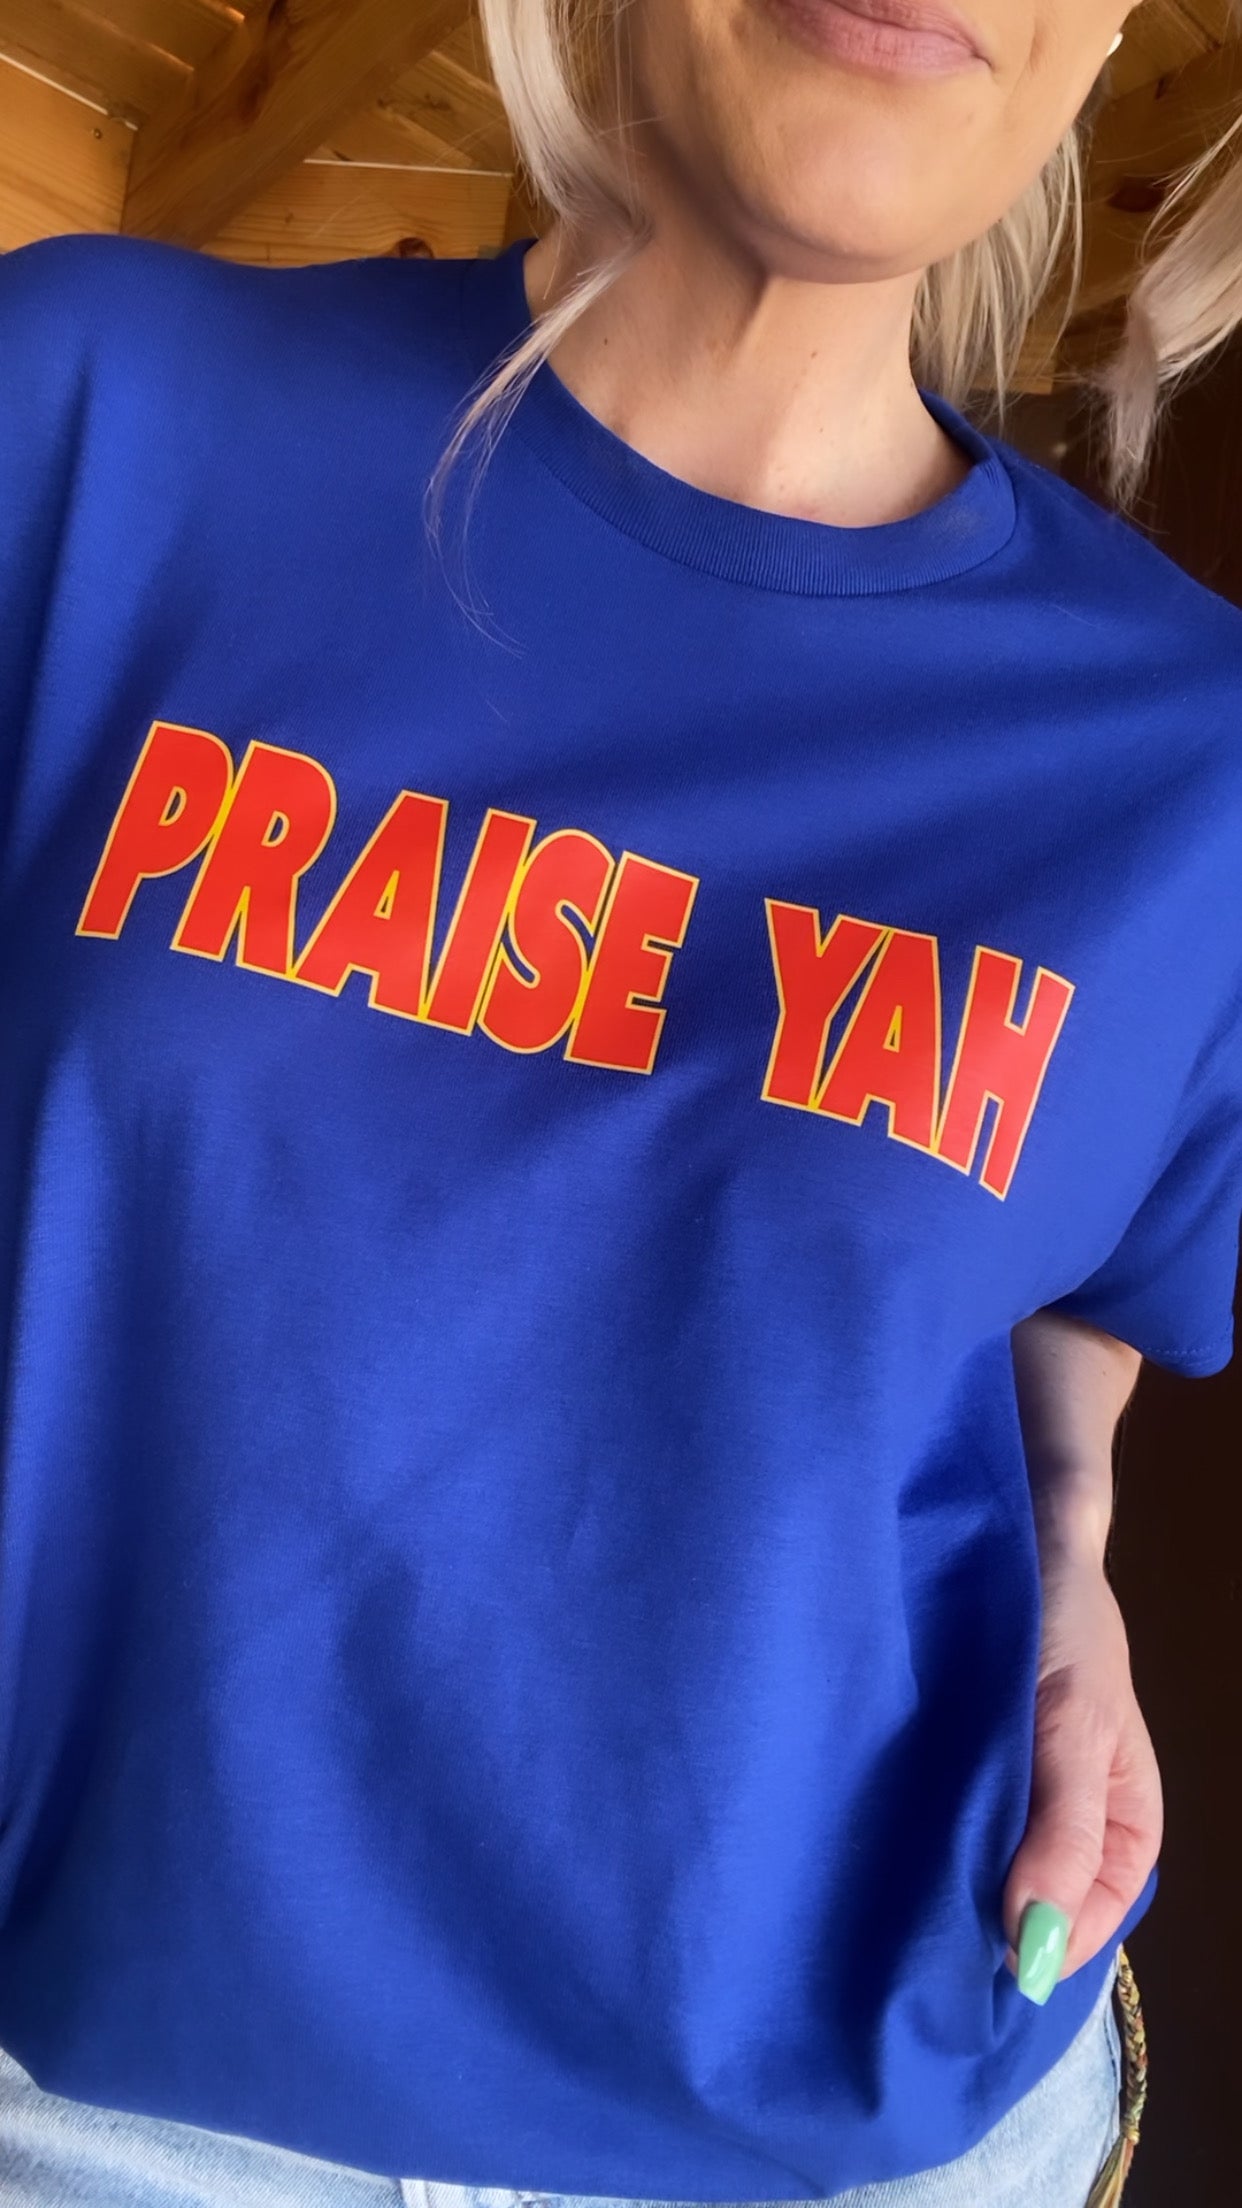 Praise Yah T-Shirt